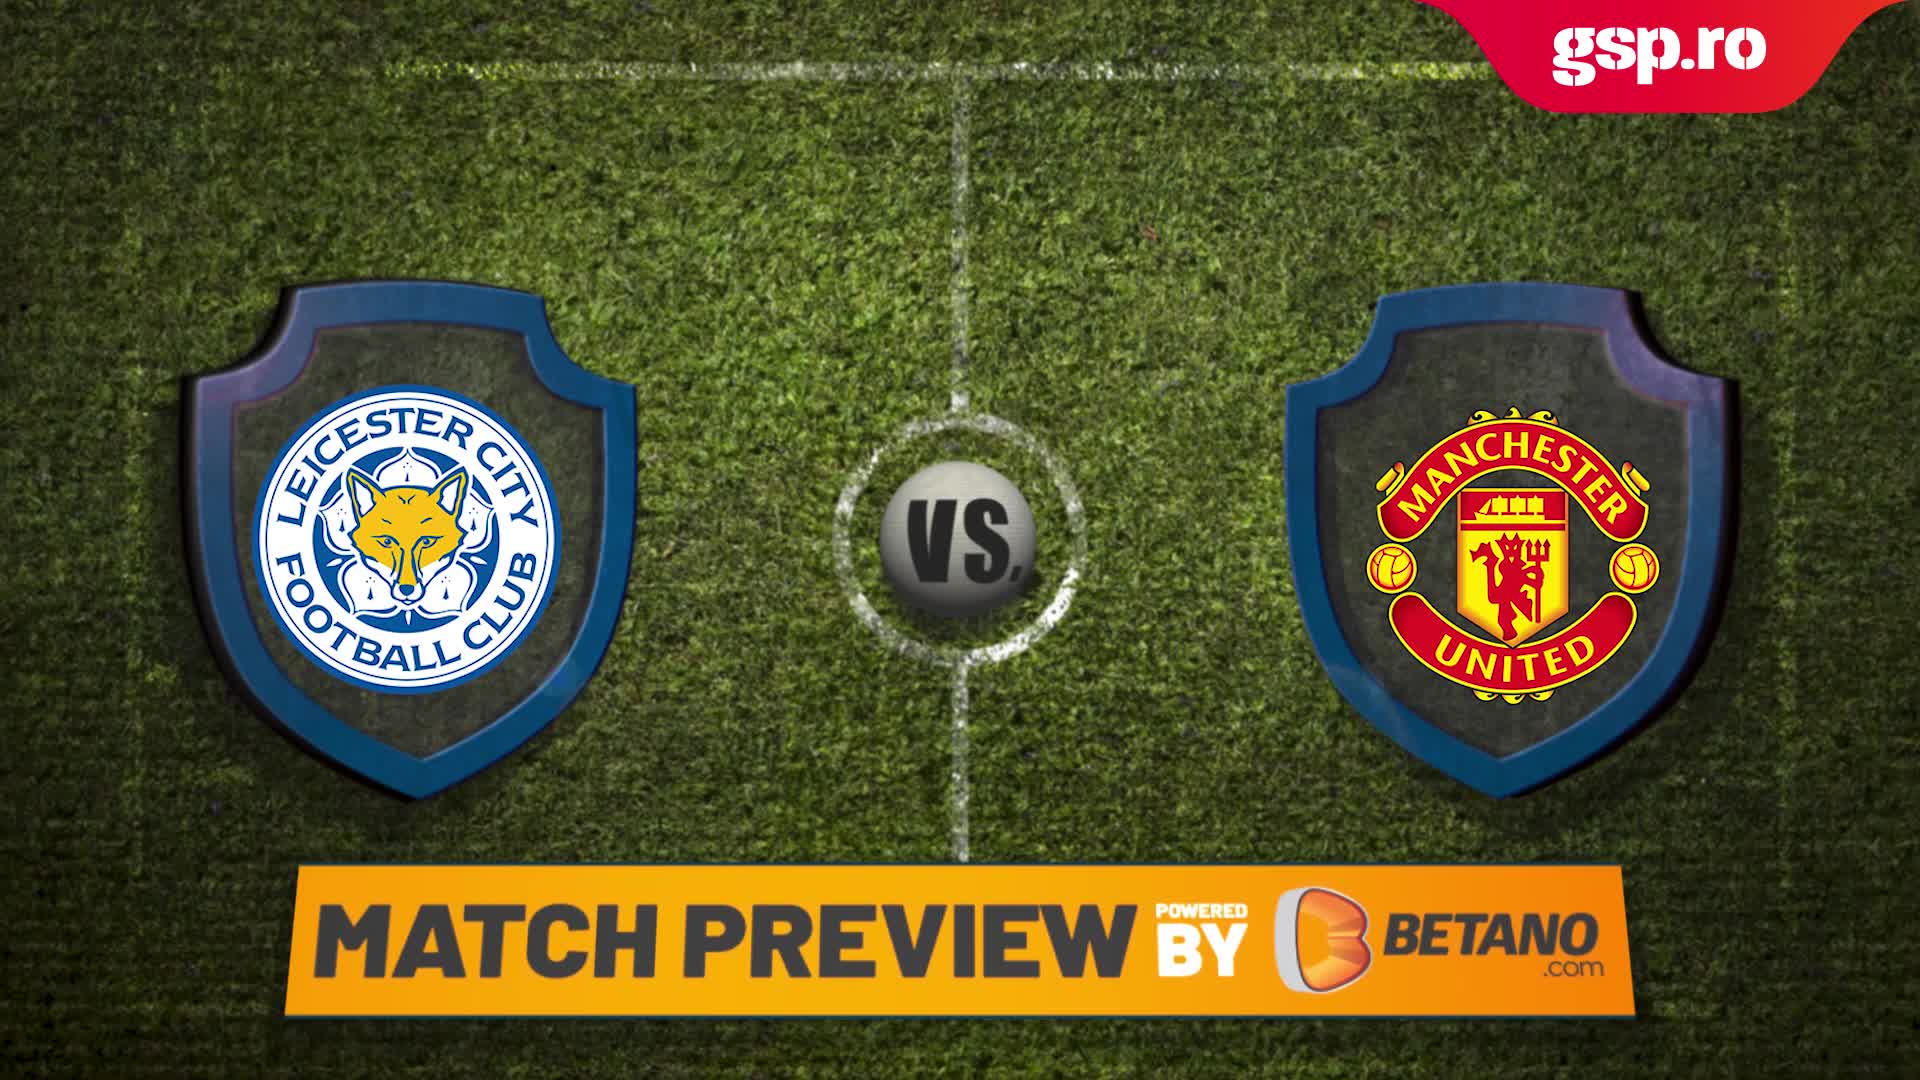  Match Preview. Leicester - Manchester United » Duel pentru un loc în Champions League